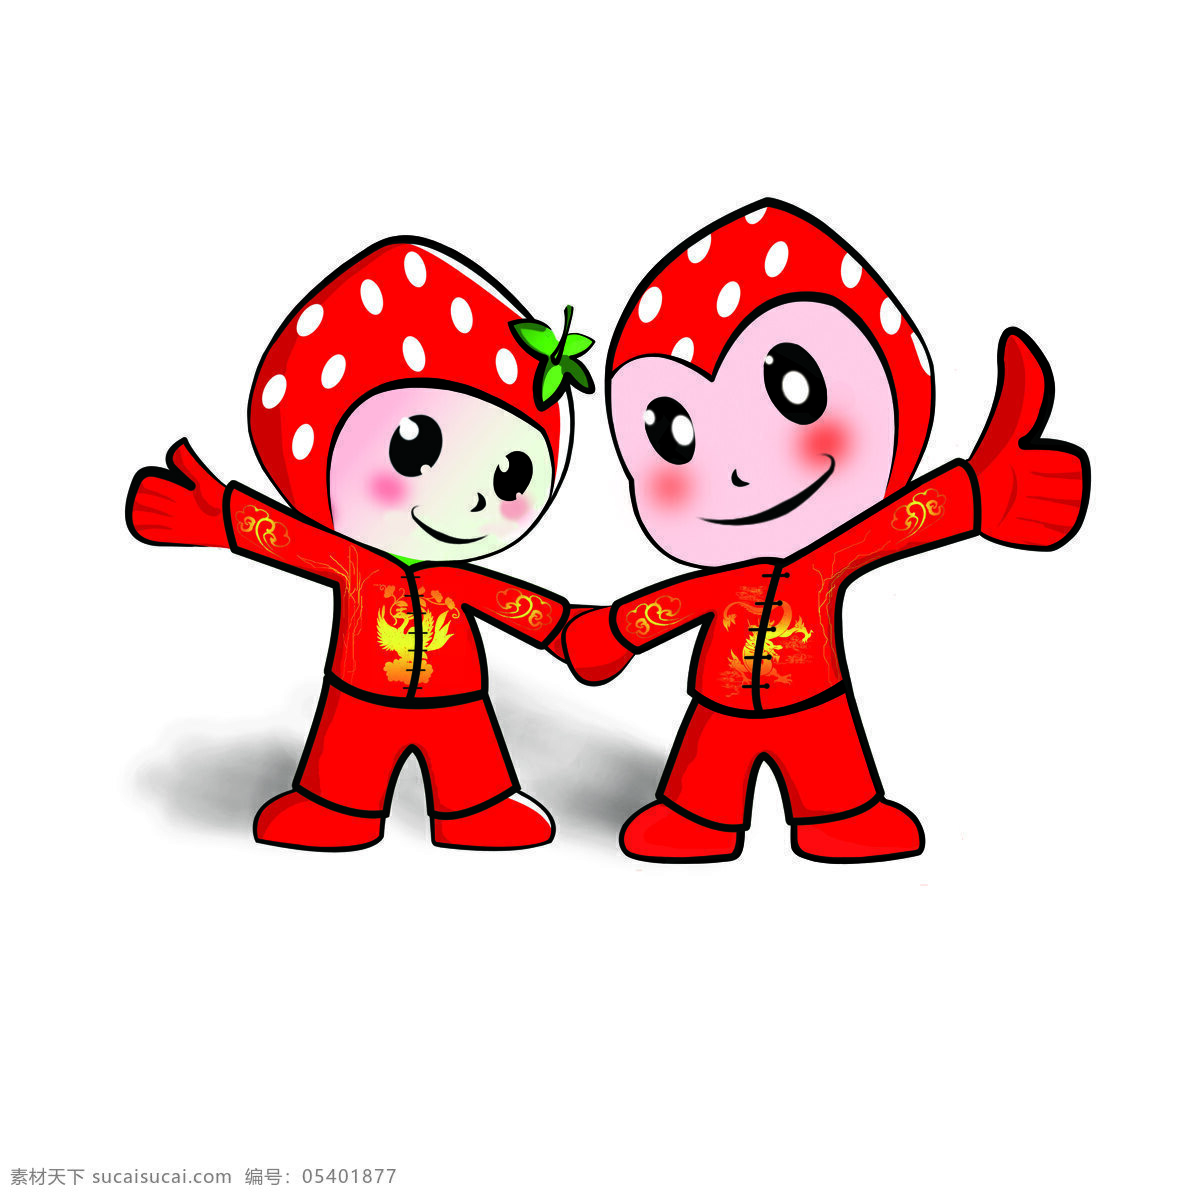 草莓公仔 草莓 草莓娃娃 草莓卡通 卡通草莓 卡通 水果 卡通水果 动漫动画